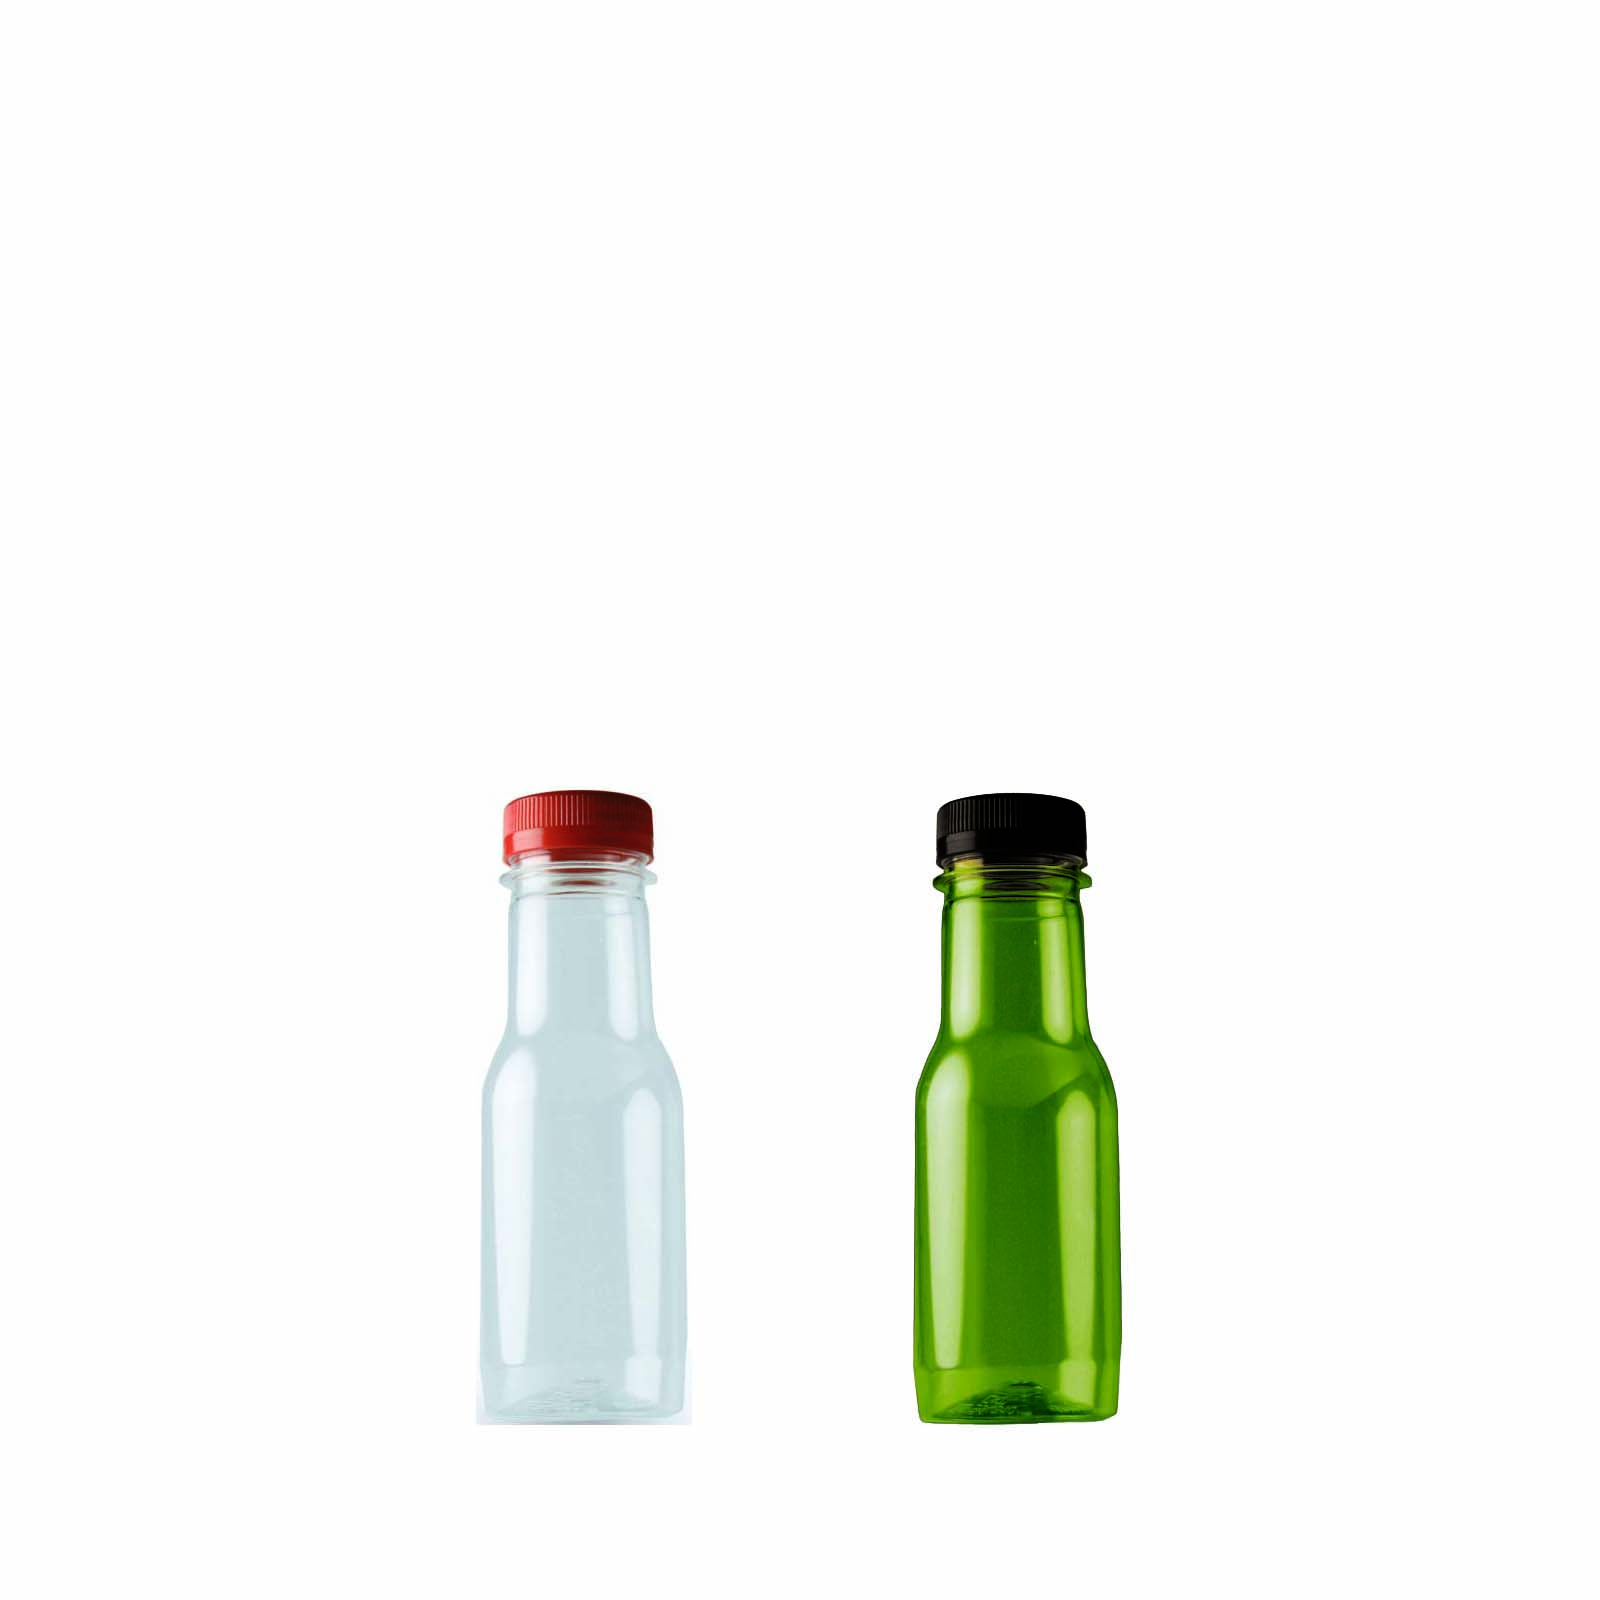 Características de nuestras botellas de plástico de 250 ml